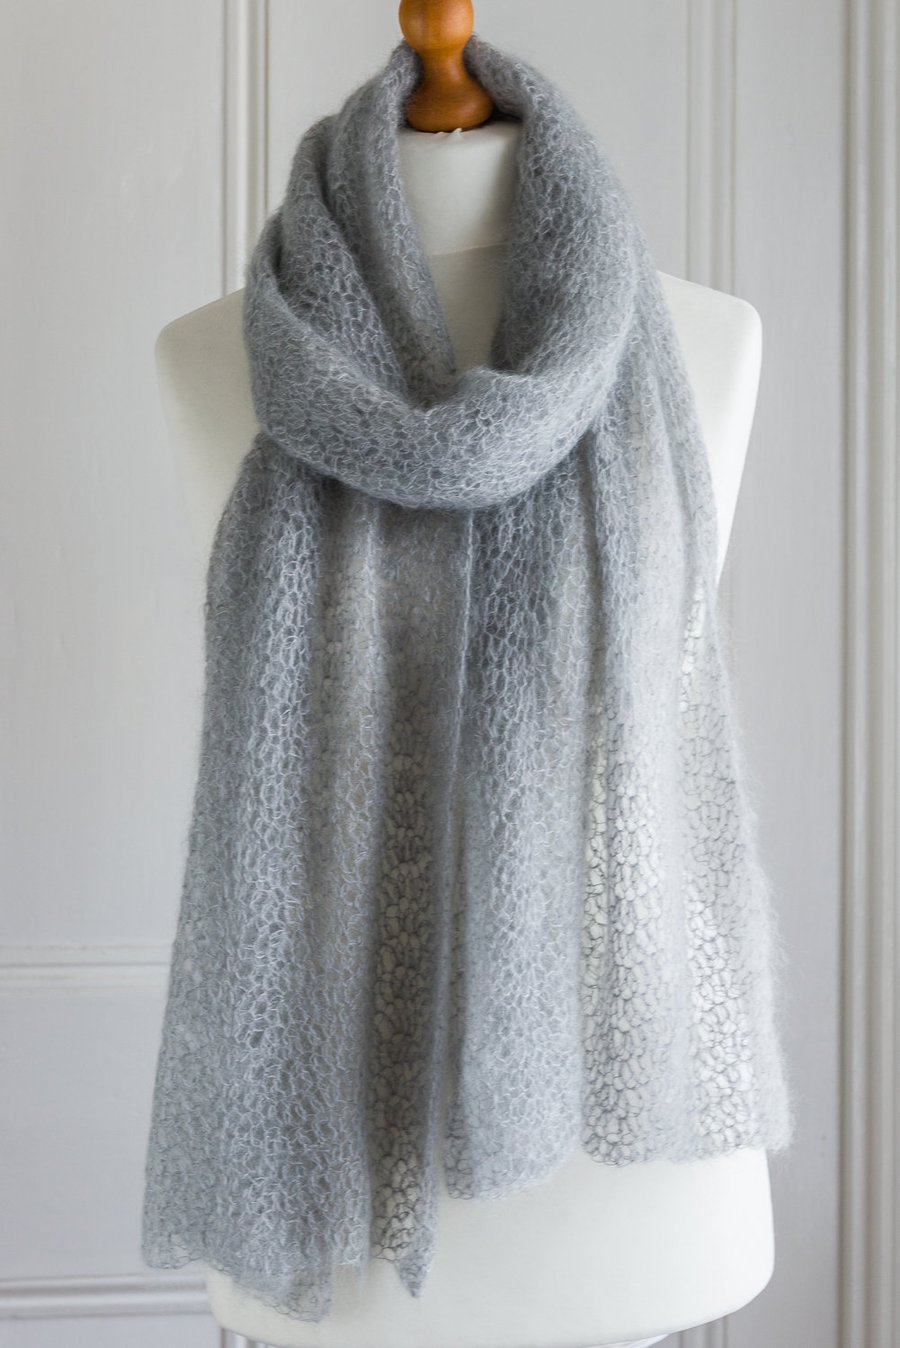 Bridal shawl - Silver grey coloured crochet lace wedding shawl in mohair silk